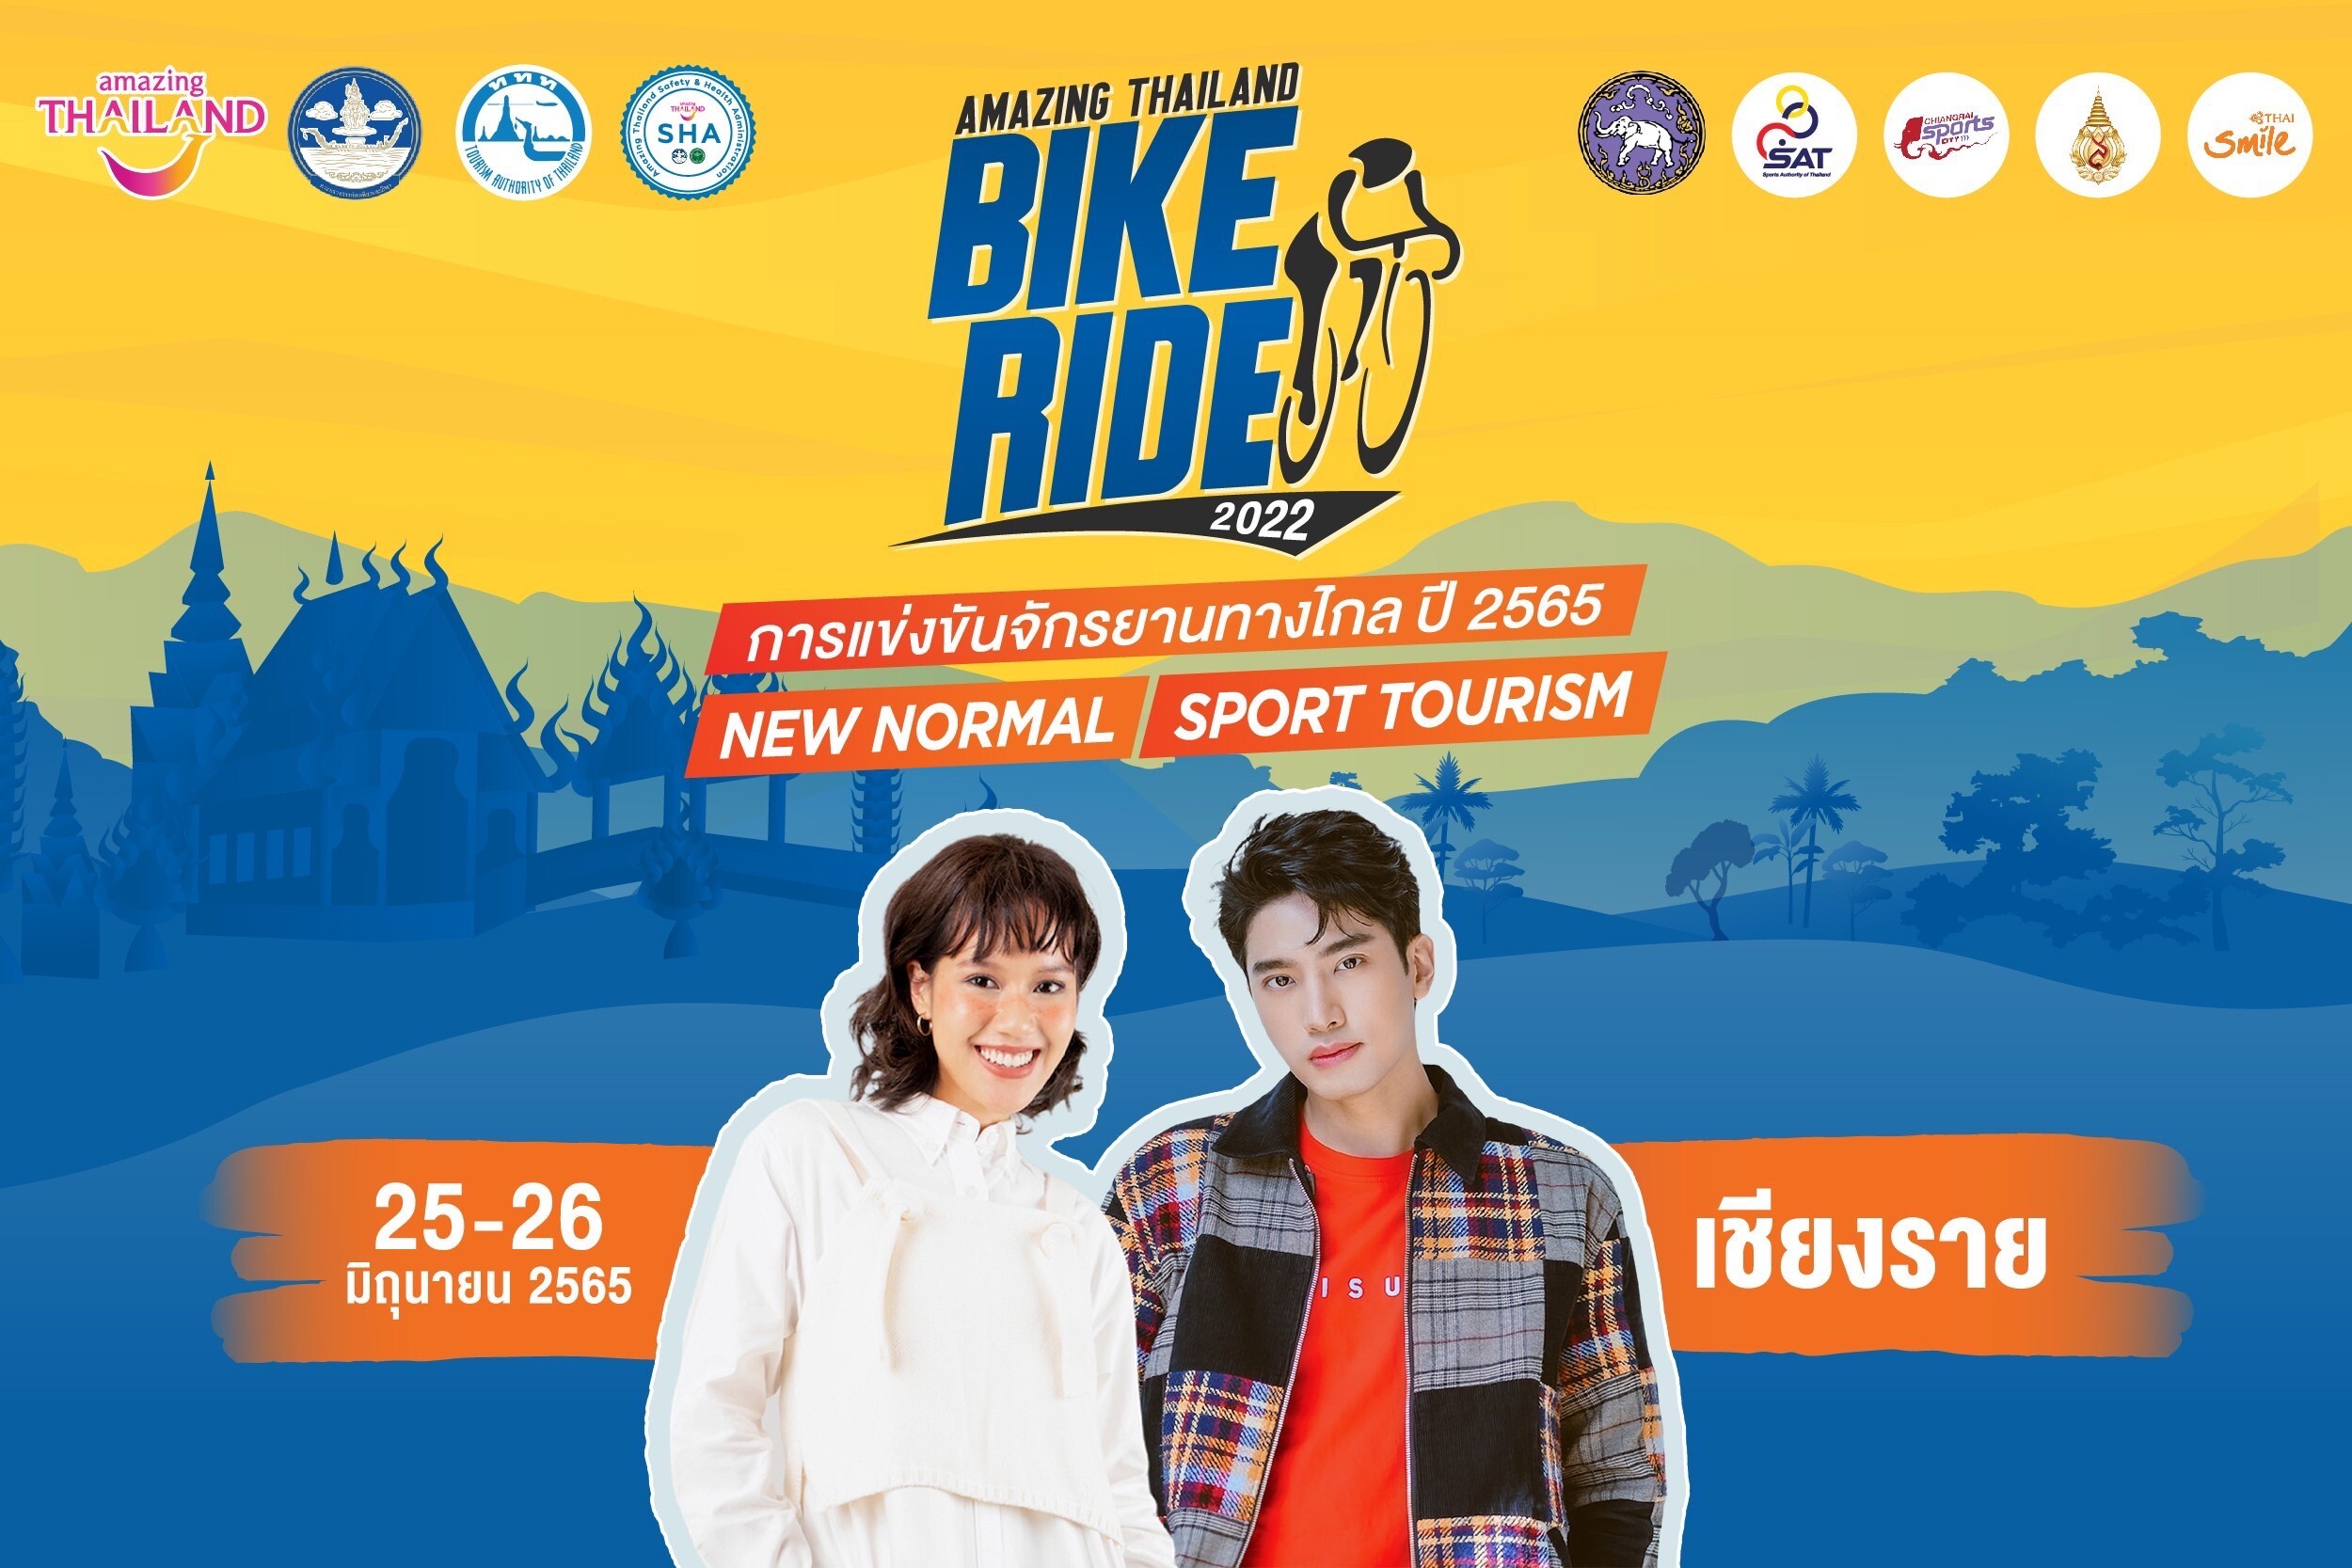 "แชป-เอิร์ต" ชวนปั่นชมสวนพฤกษศาสตร์ เฉลิมพระเกียรติ 80 พรรษา จ.เชียงราย 25-26 มิ.ย. 65 ในกิจกรรมการแข่งขันจักรยานทางไกล ปี 2565 (Amazing Thailand Bike Ride 2022)